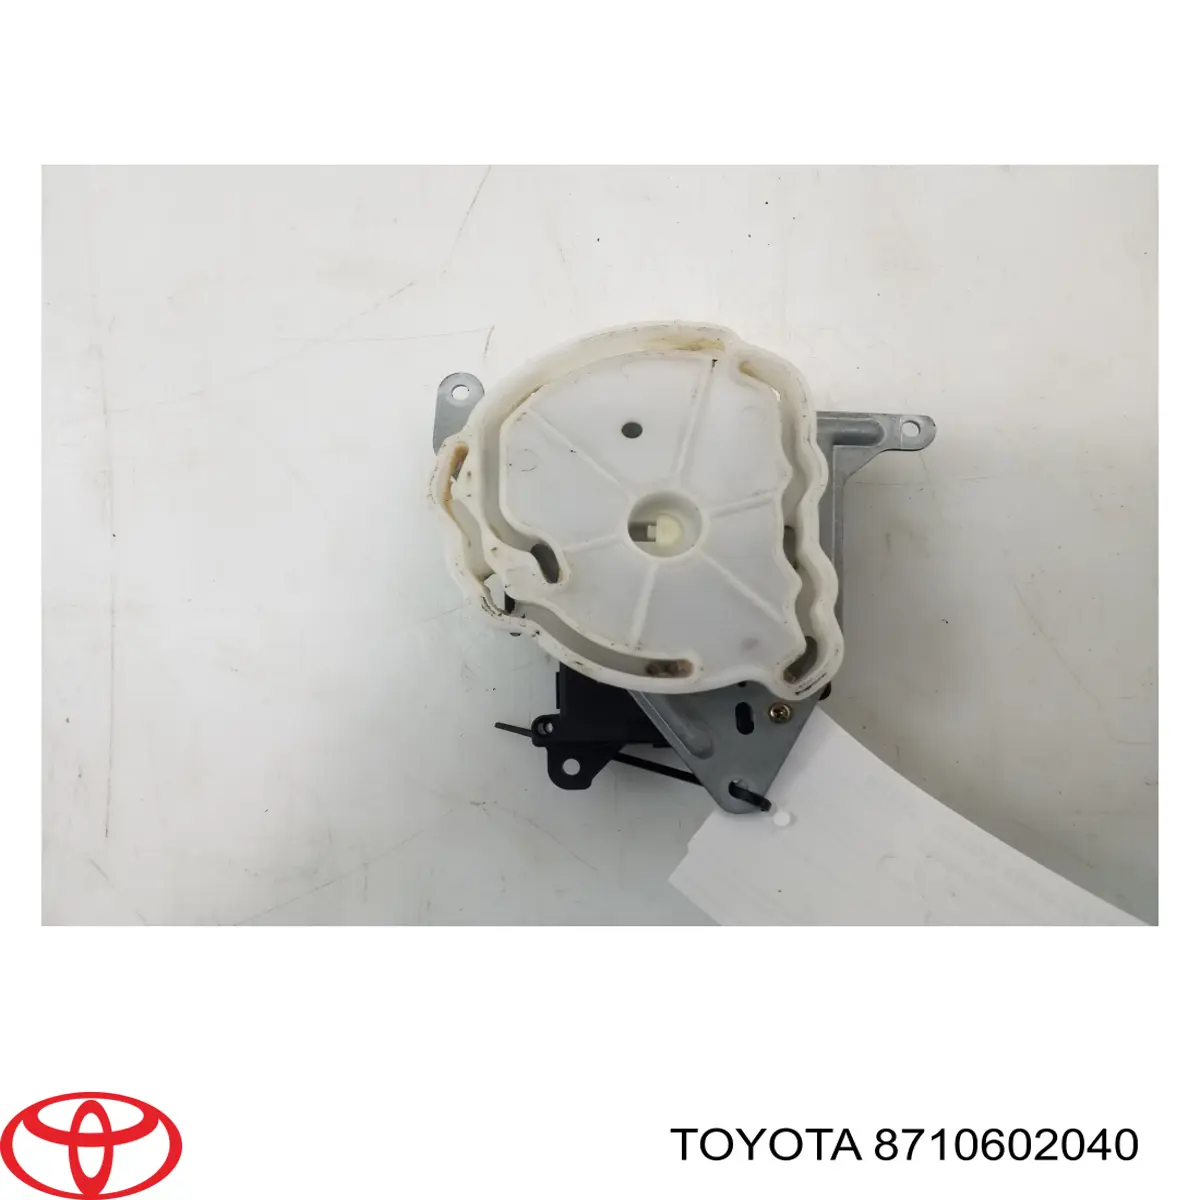 Привод заслонки печки на Toyota Avensis T25